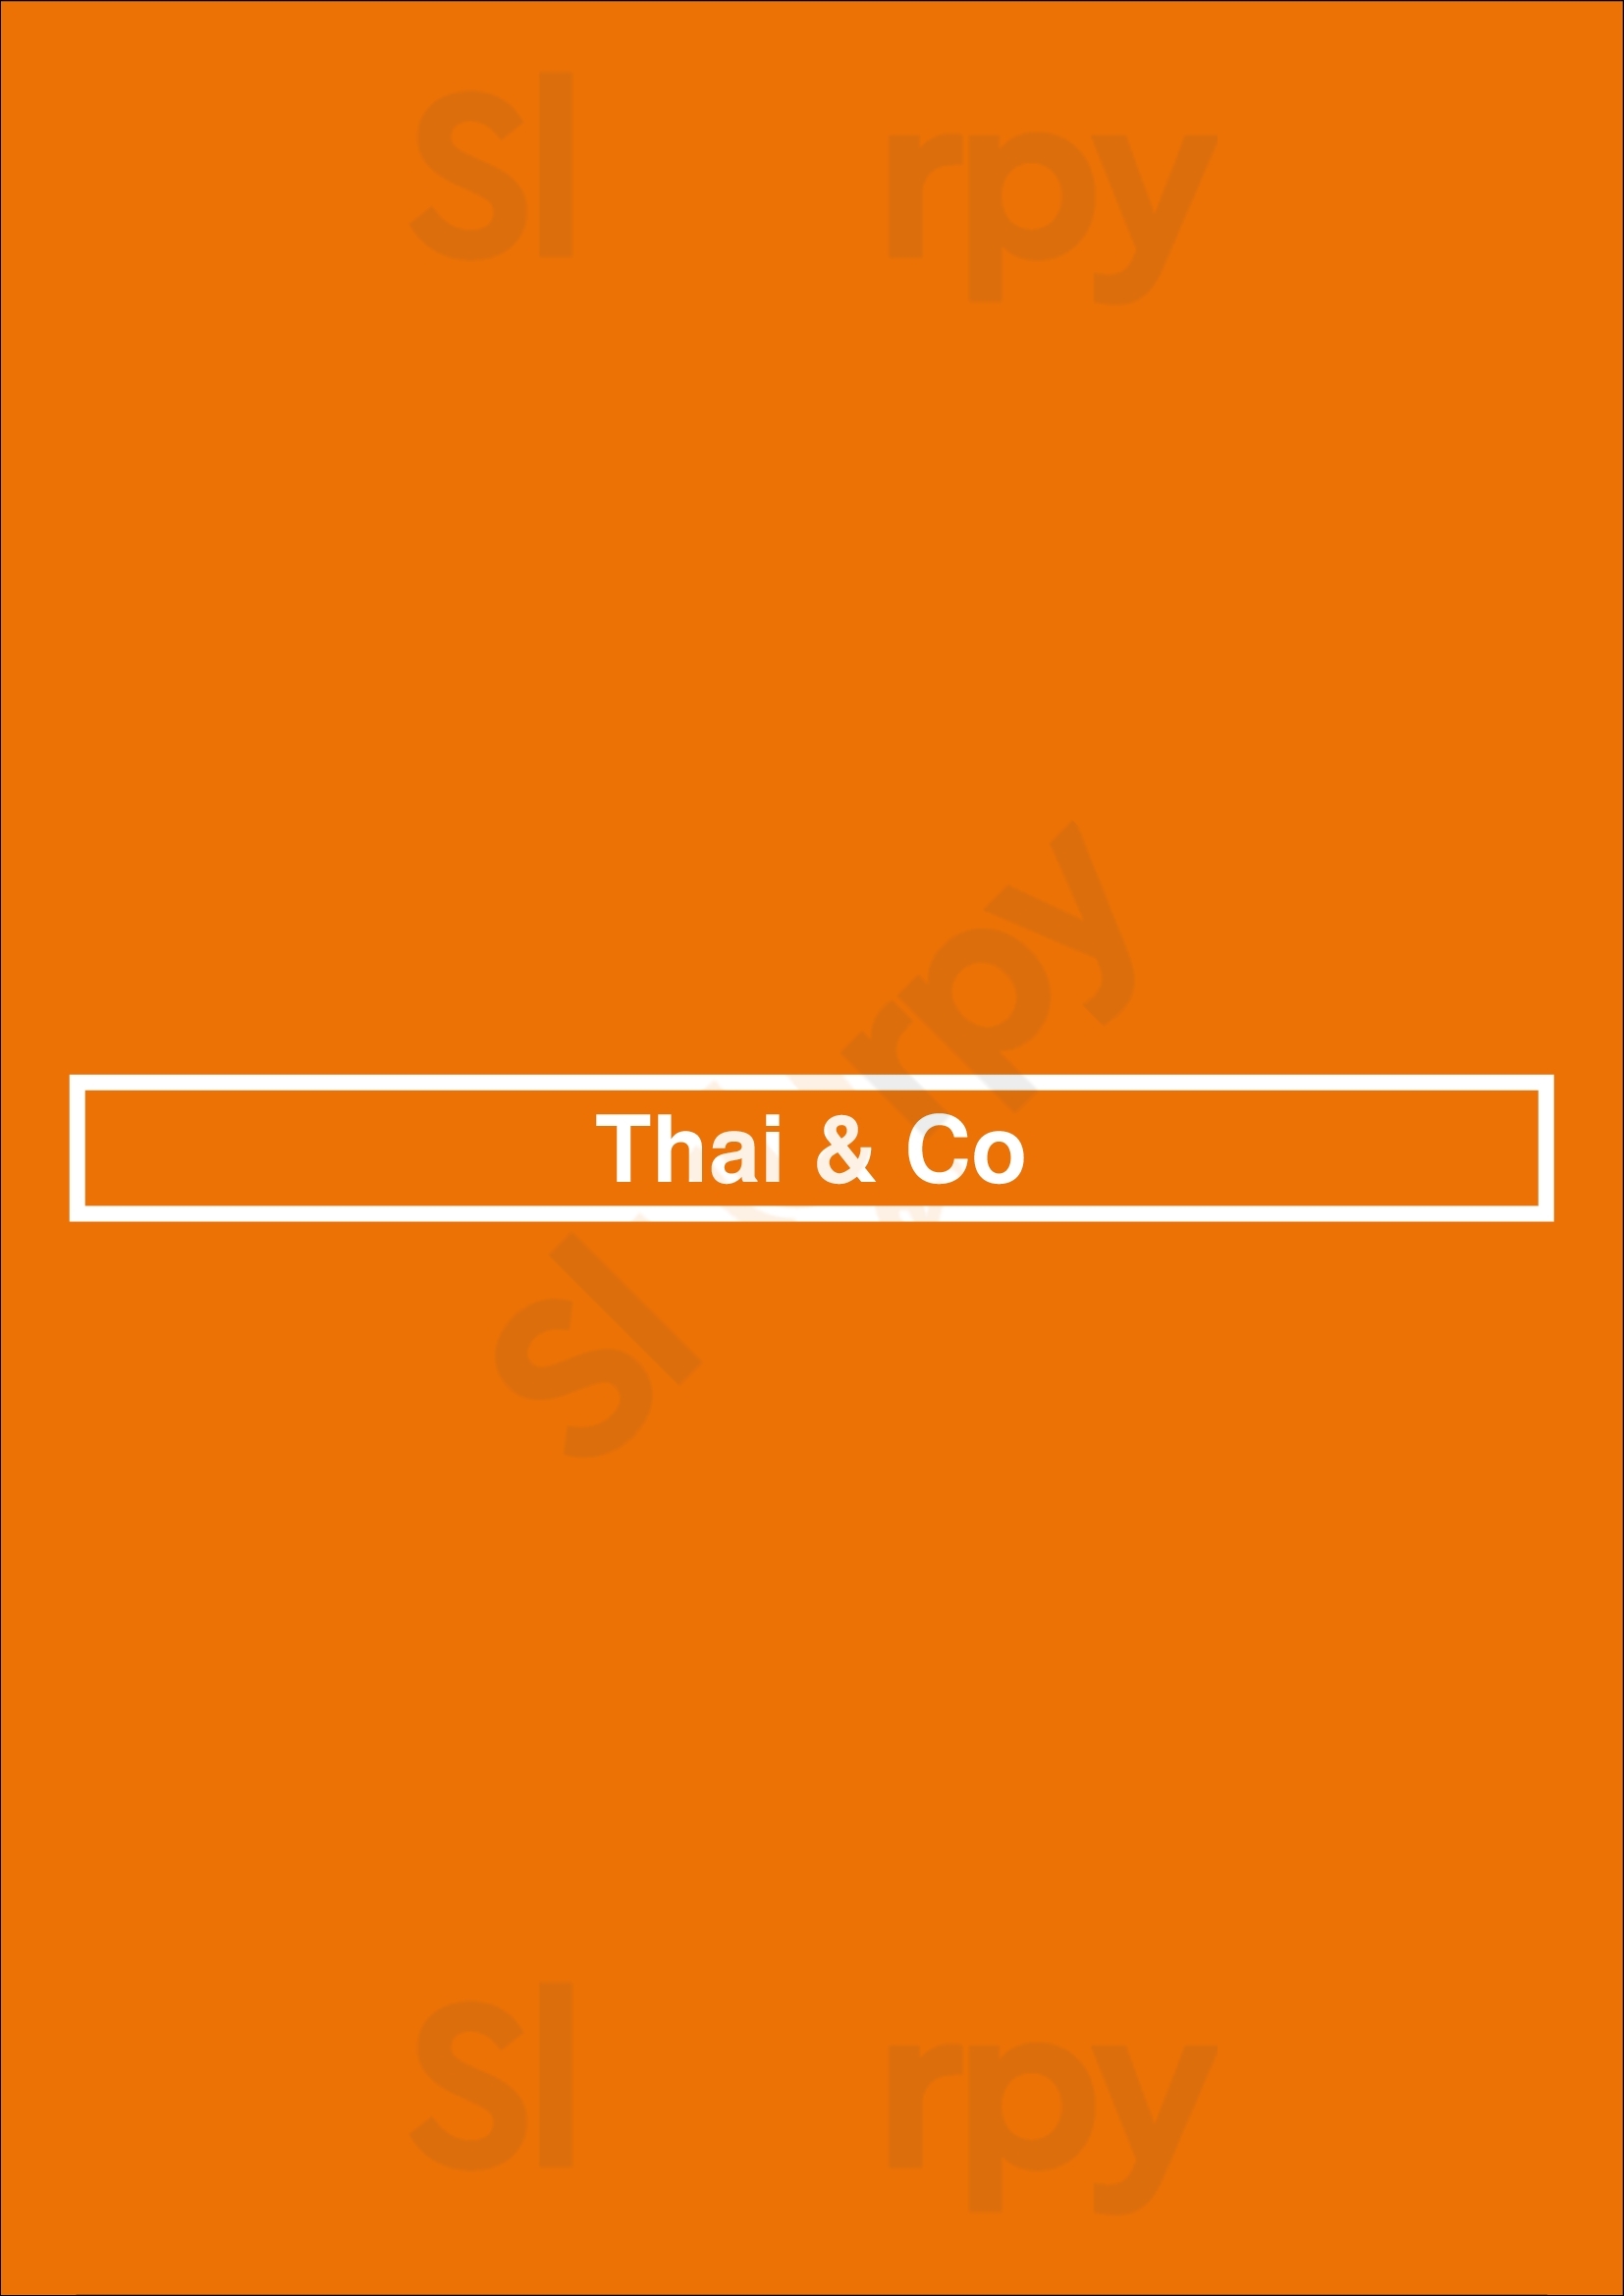 Thai & Co Amsterdam Menu - 1